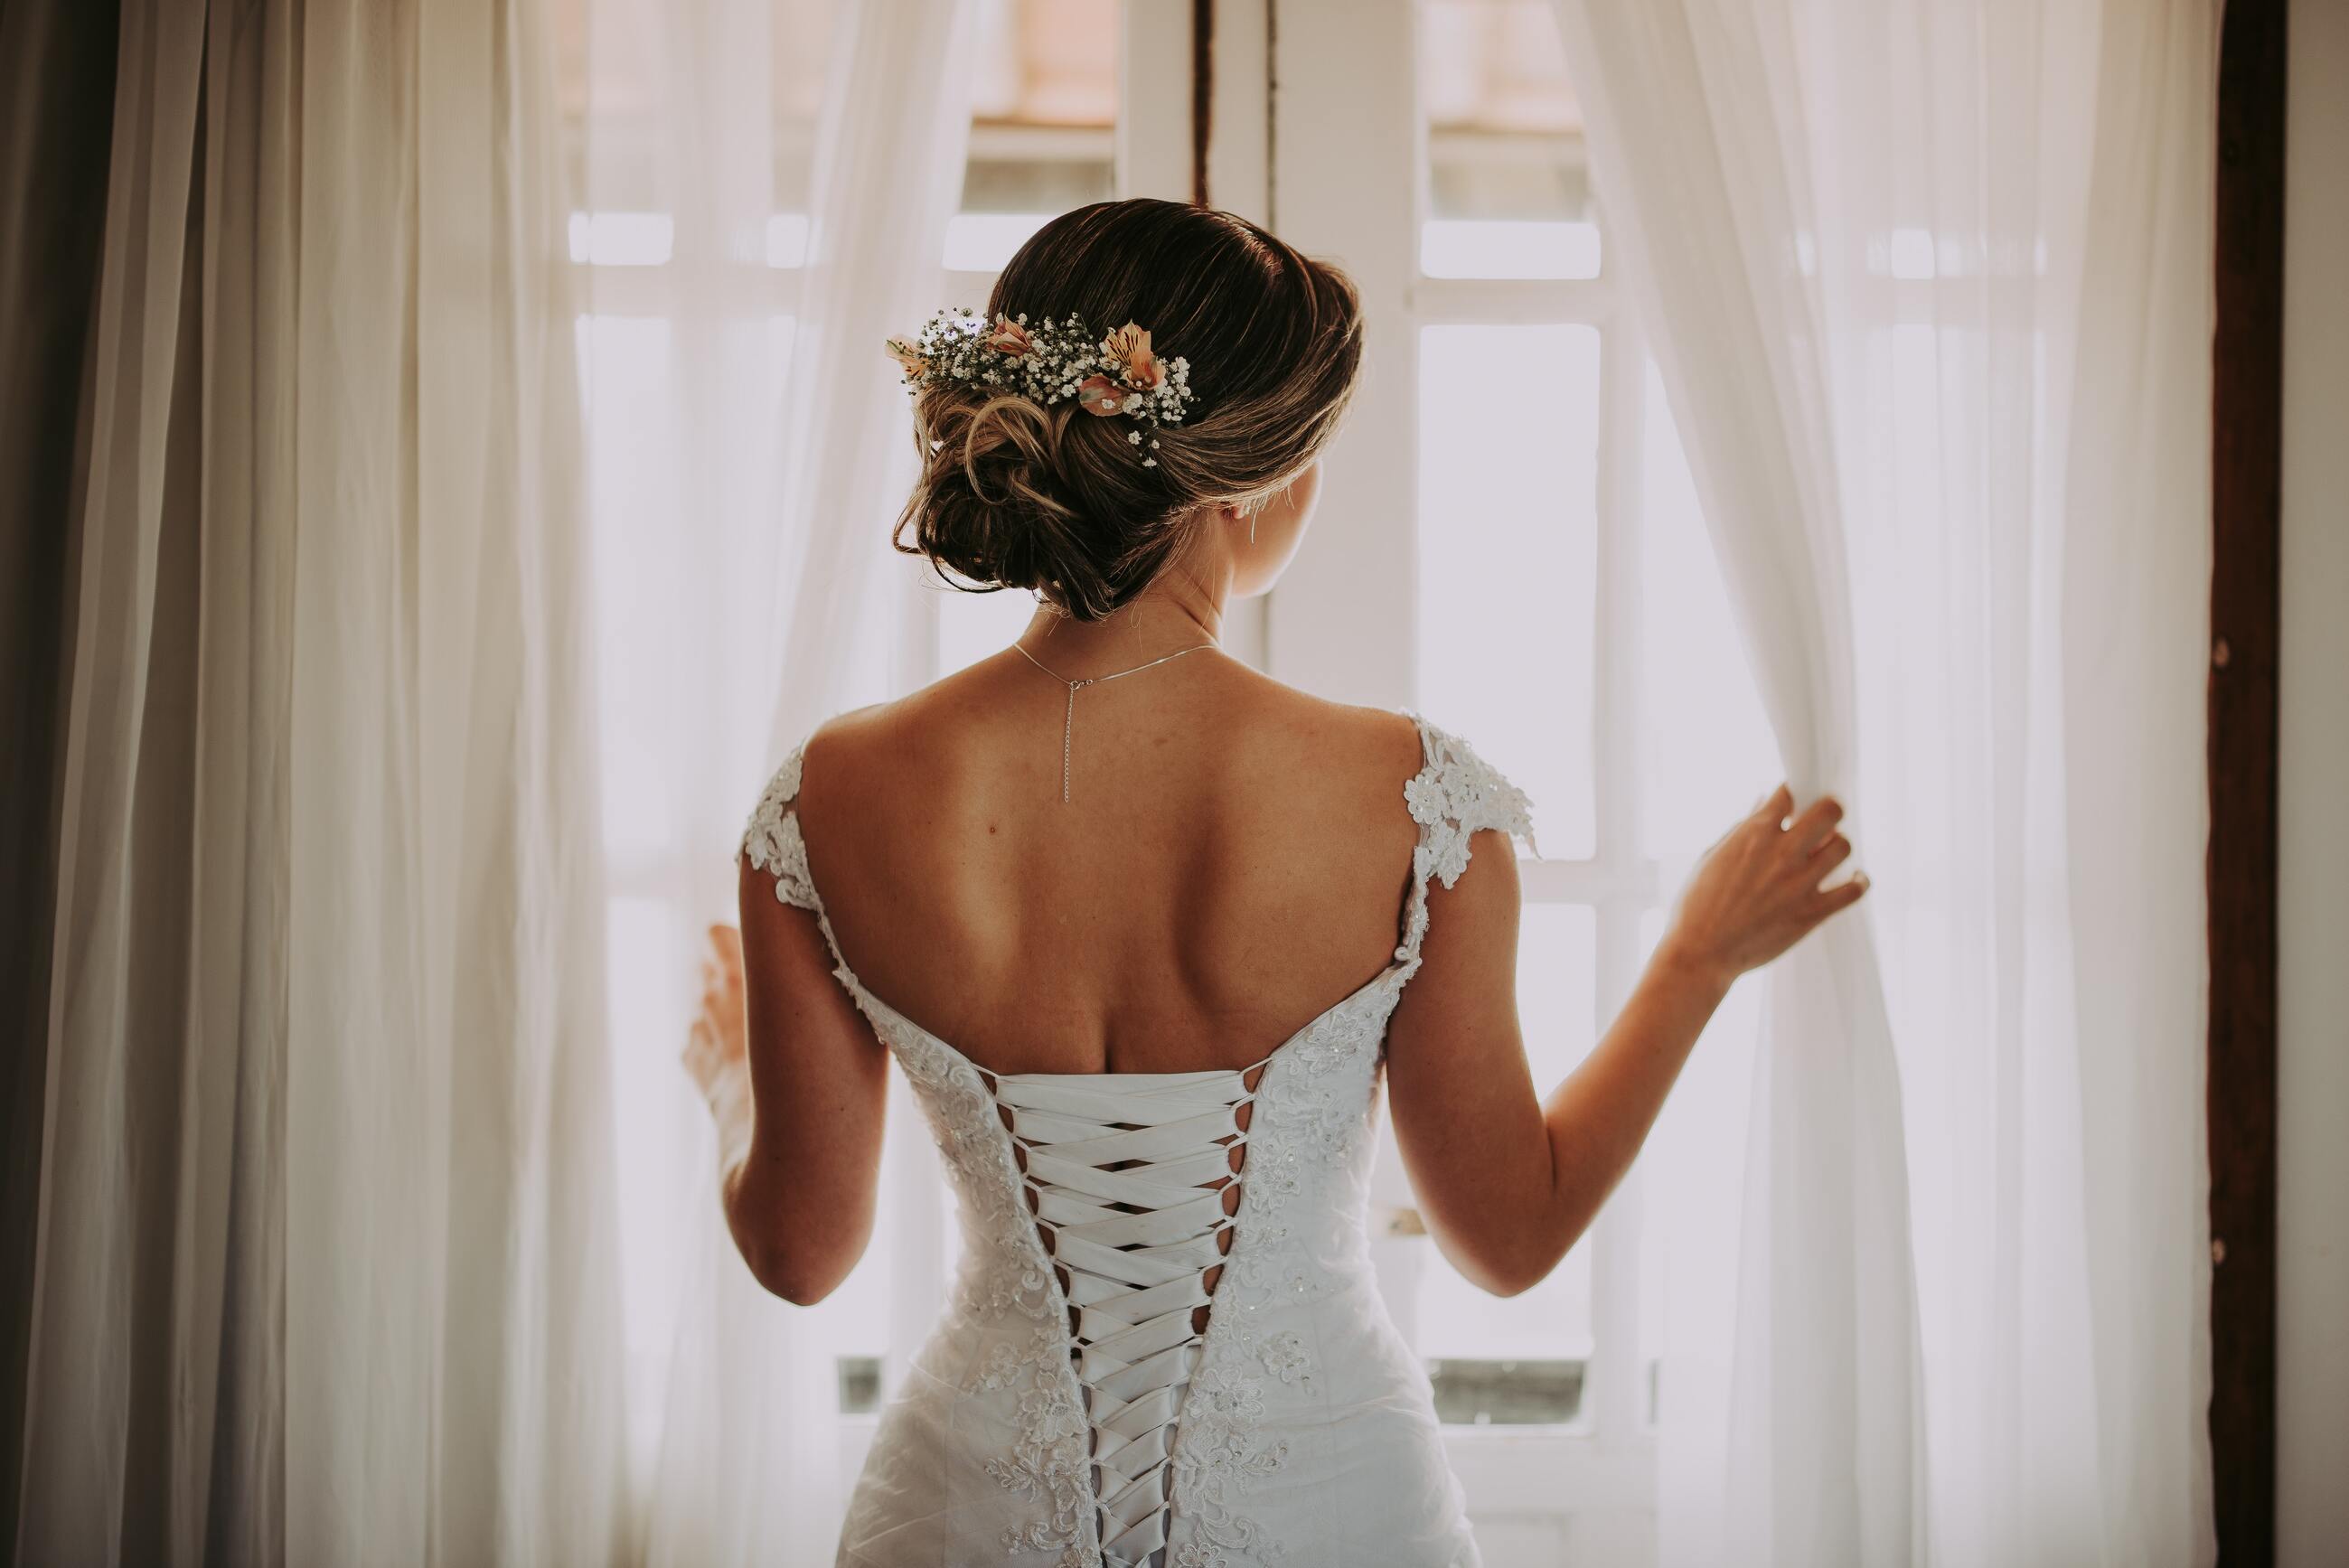 Wedding Dress Journey Image